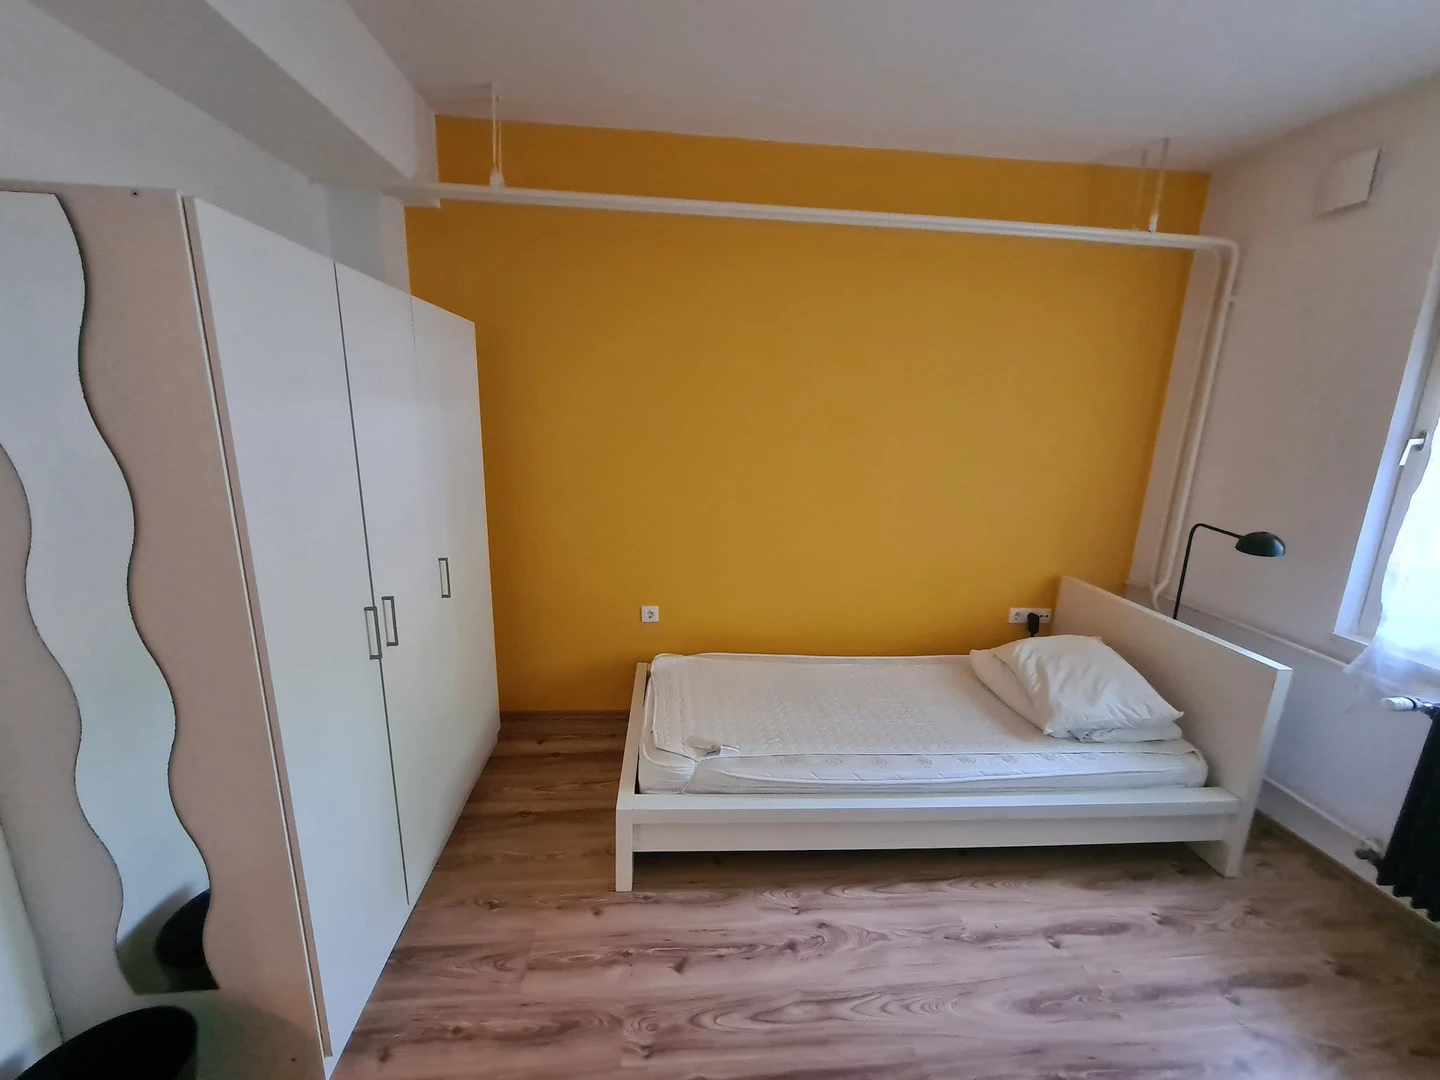 Ljubljana de çift kişilik yataklı kiralık oda